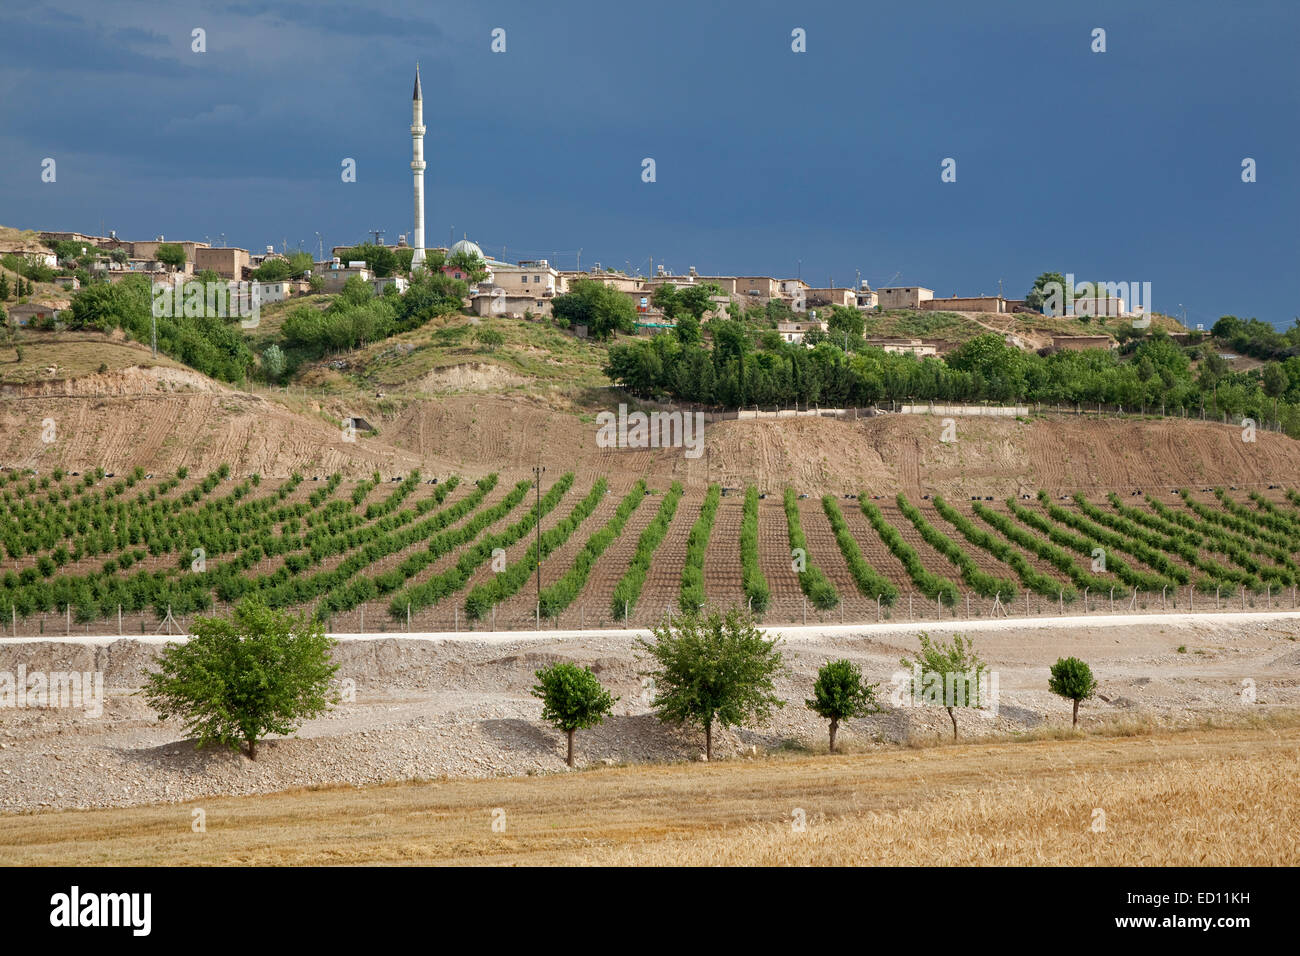 Vignoble et minaret dans village rural de l'Anatolie, Turquie Banque D'Images